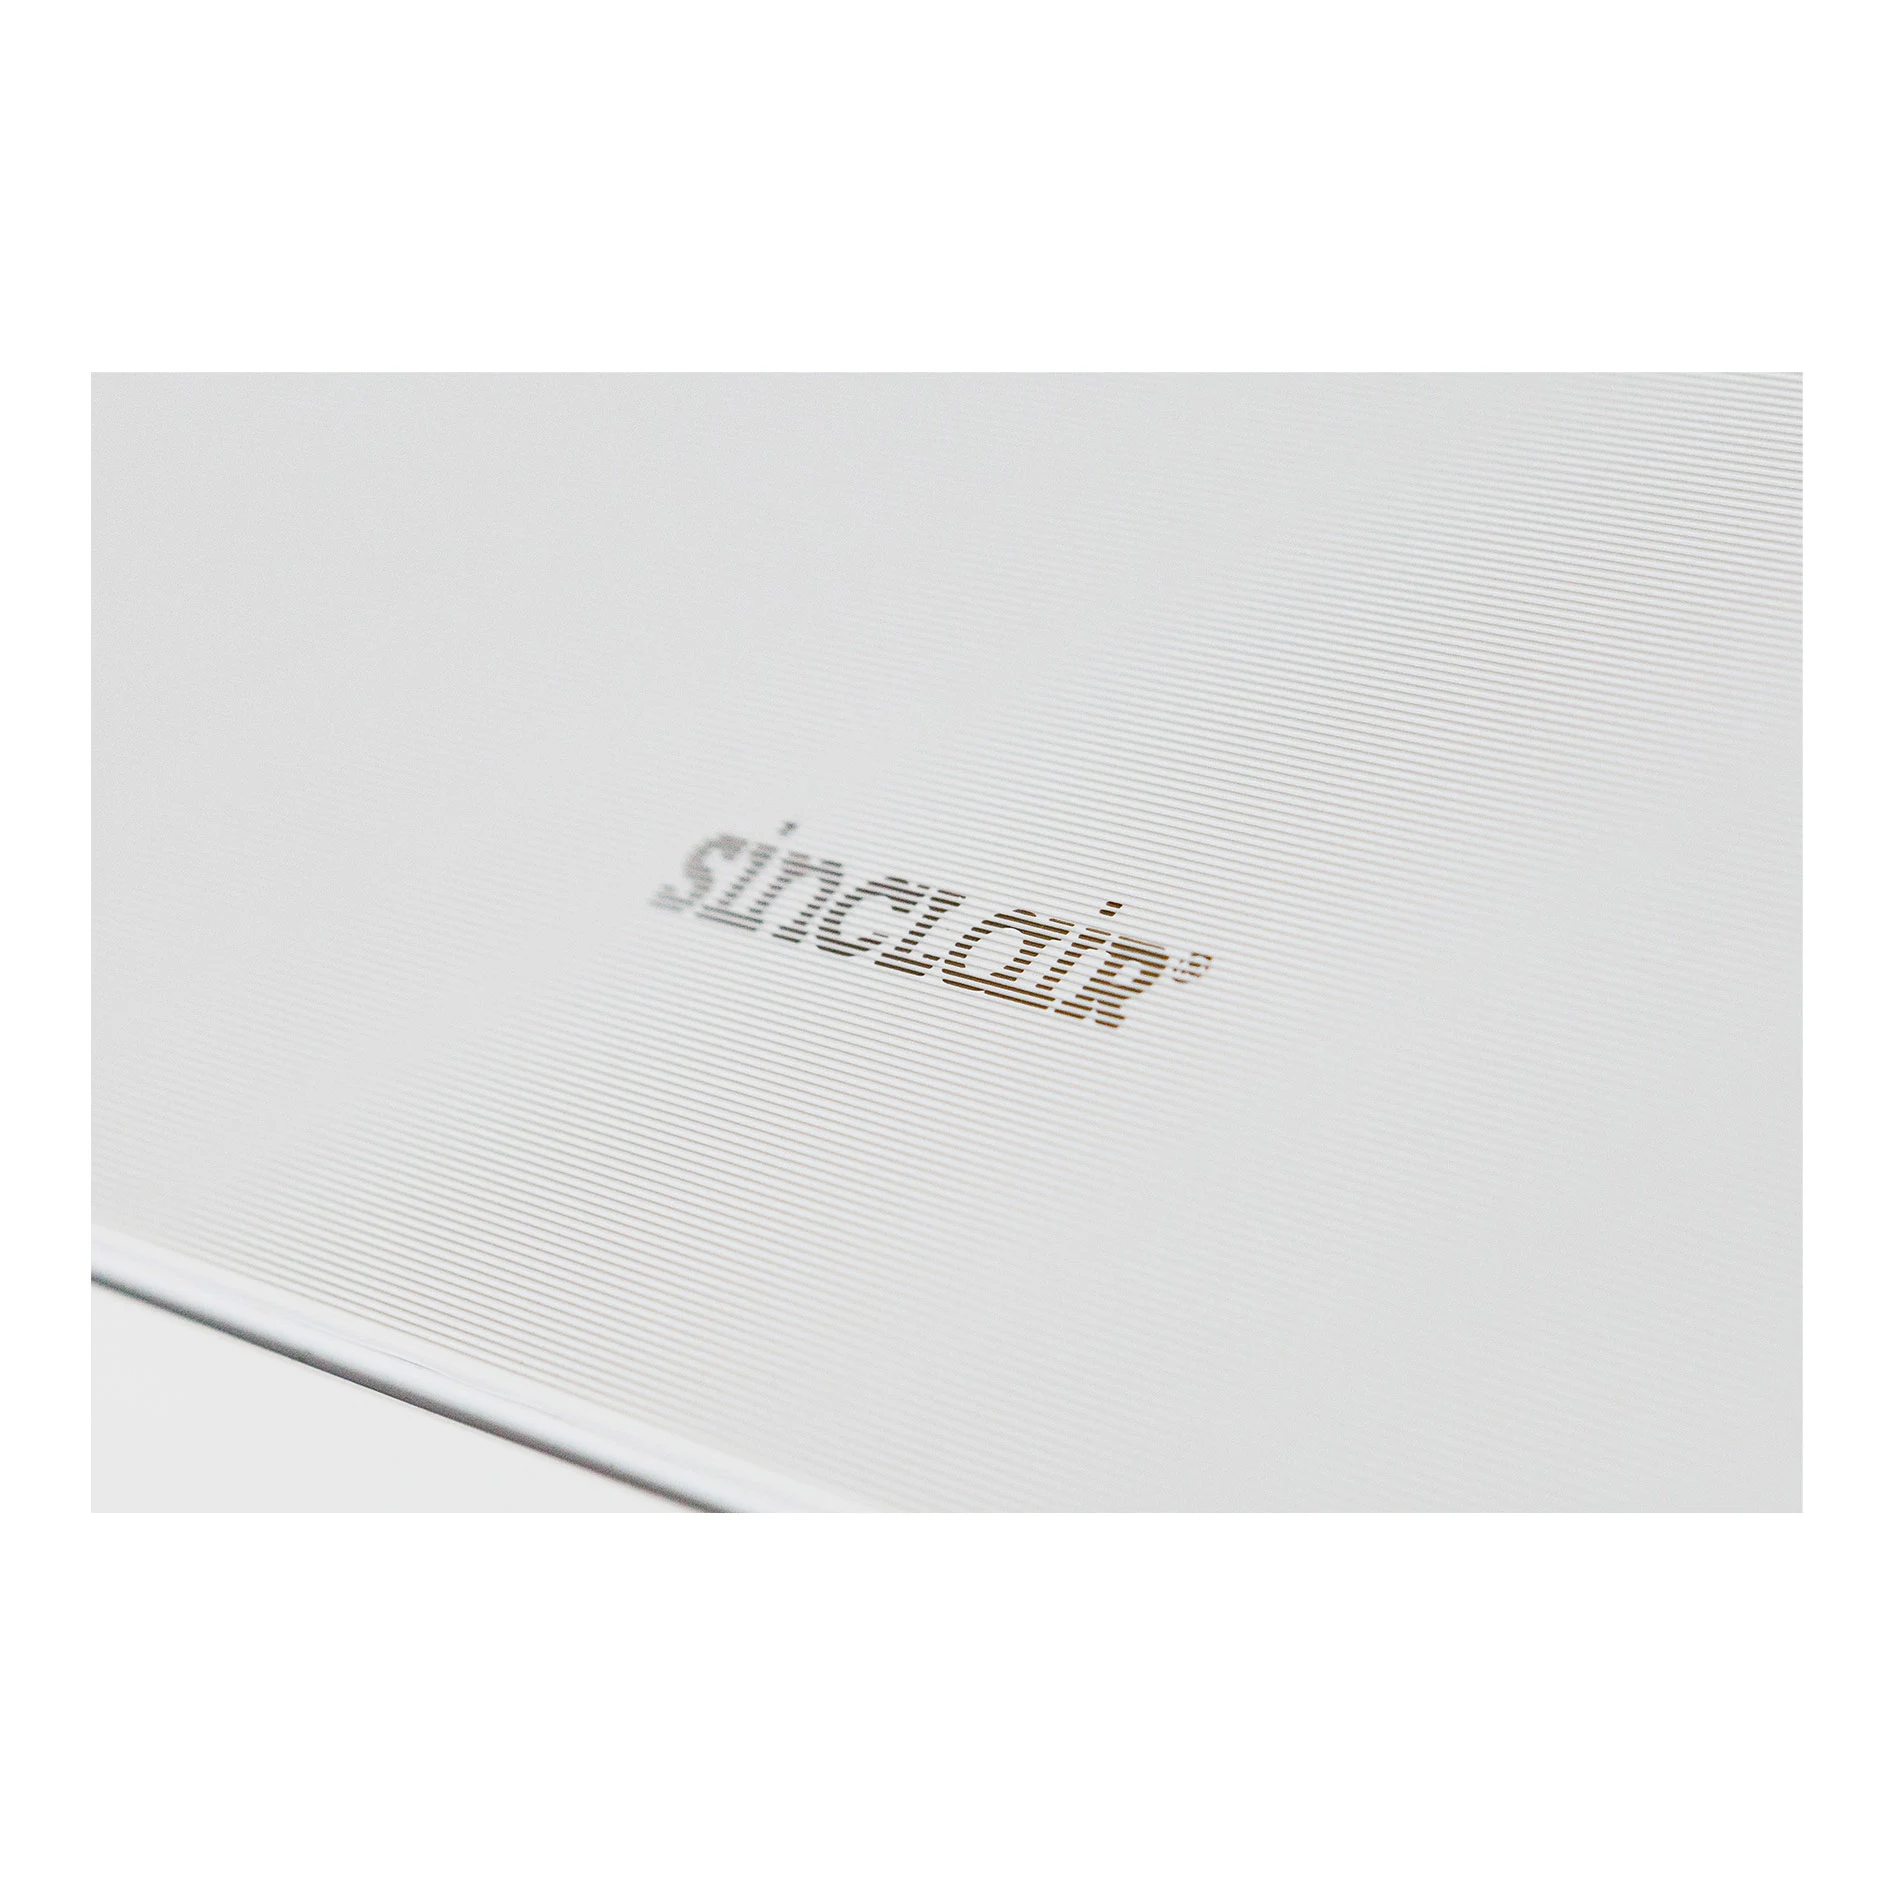 Sinclair Marvin Split Klimaanlage 2,7 kW Weiß